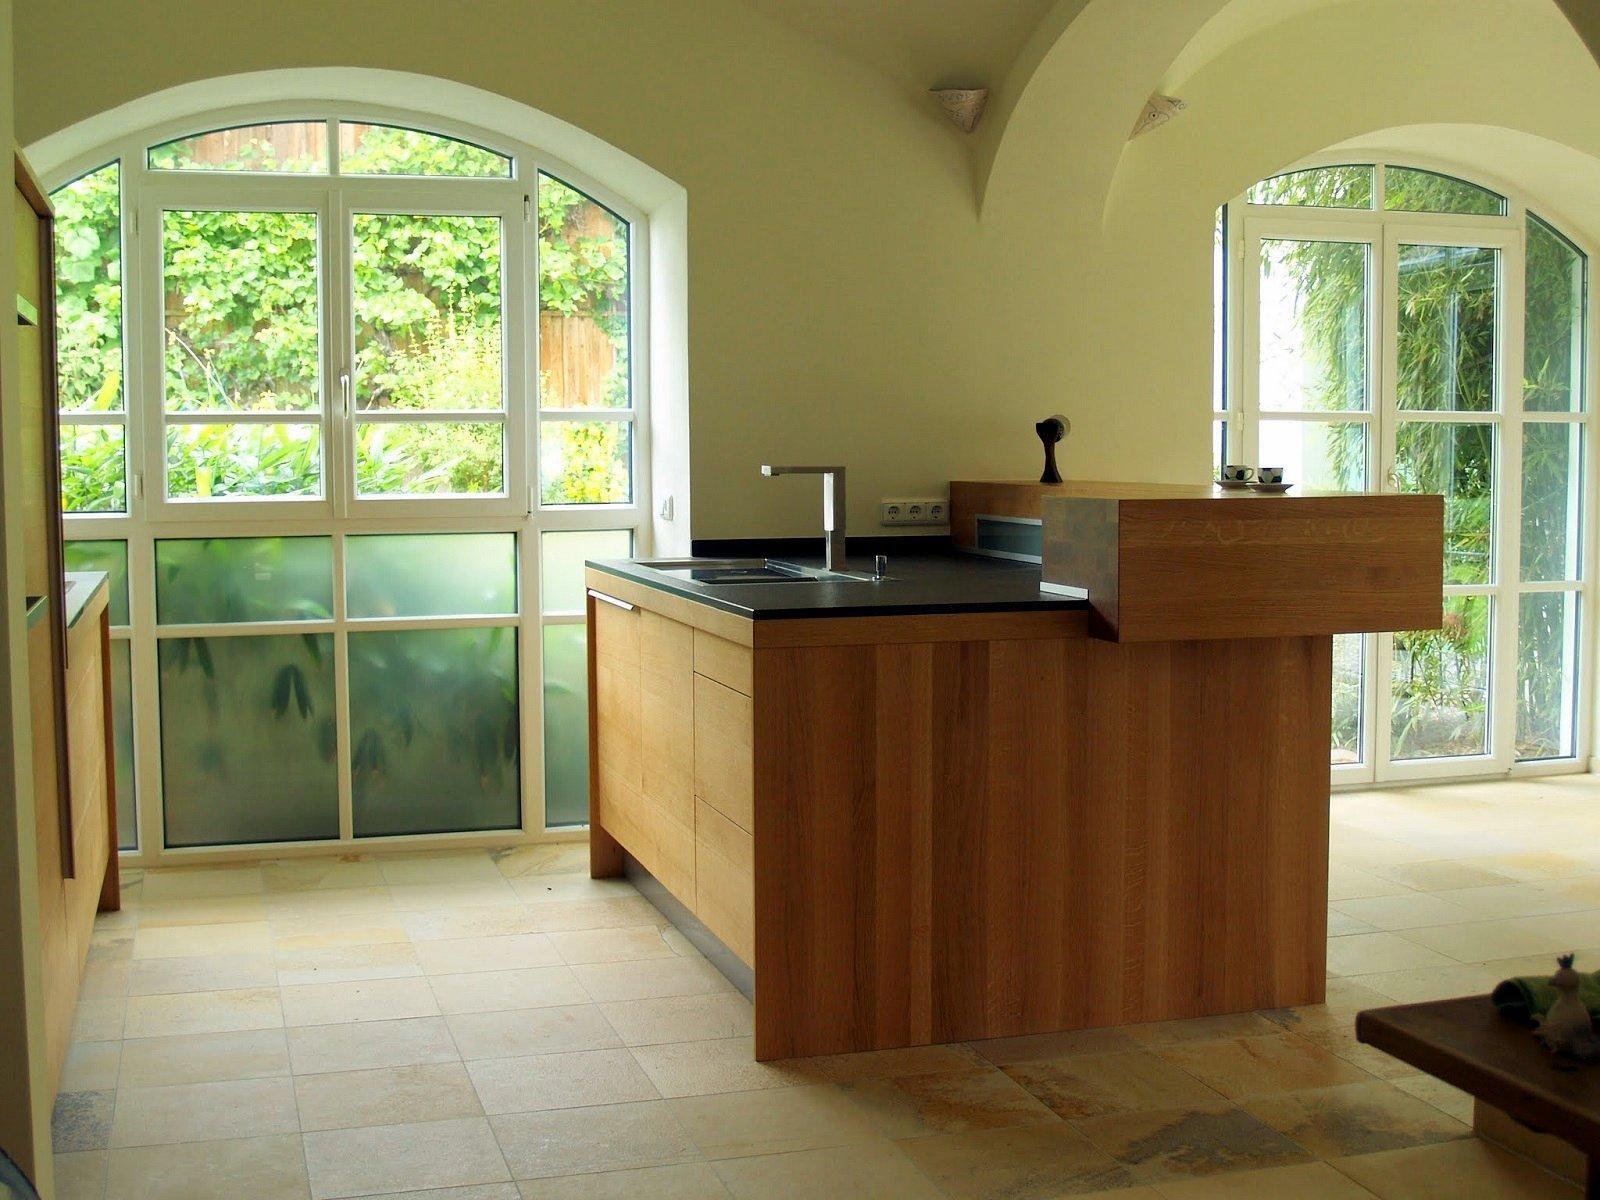 #Schreinerküche in einer imposanten Räumlichkeit mit #Gewölbe. #Spülenblock mit aufgesetzter #Theke